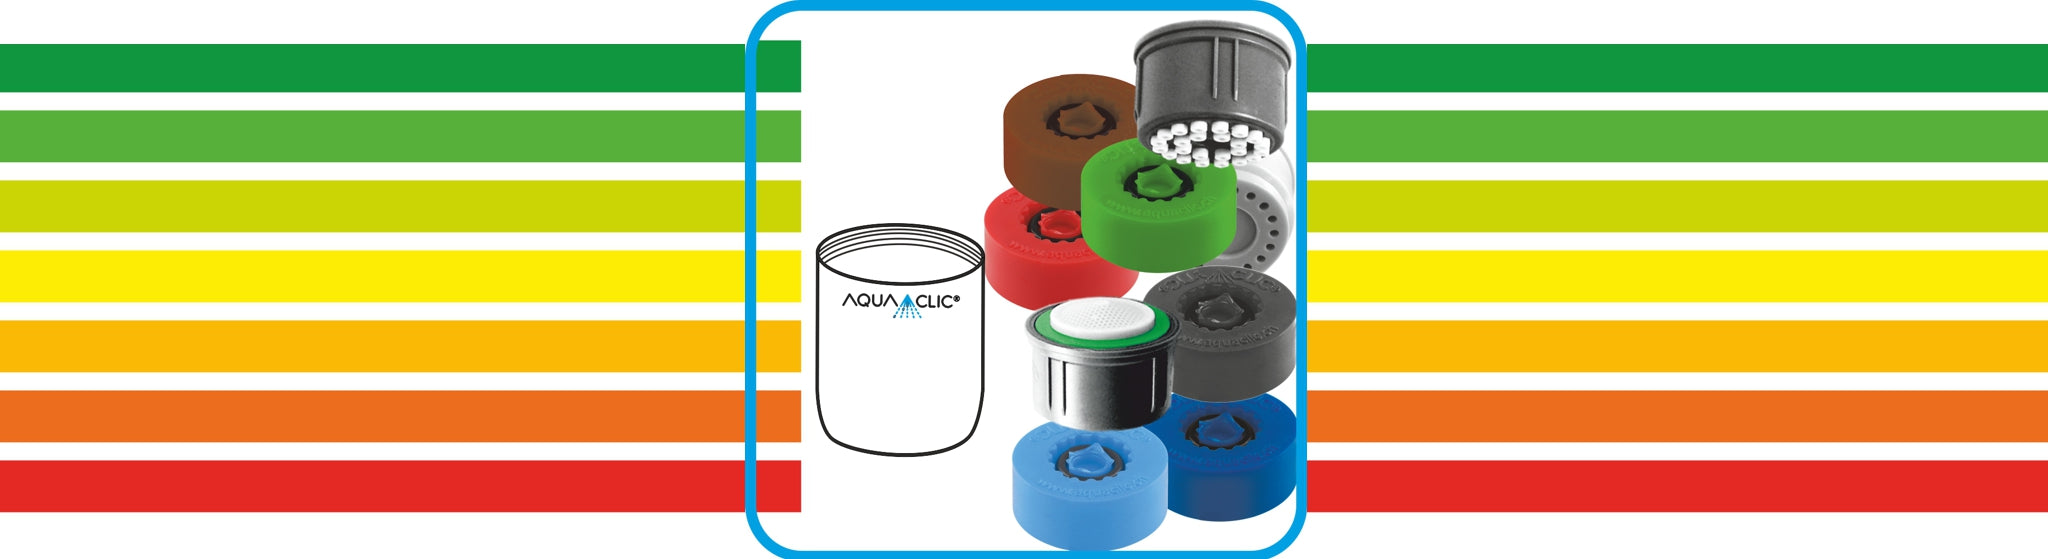 AquaClic-Strahlregler-Zeichnung und verschiedene Strahlregler-Innenteile dazu